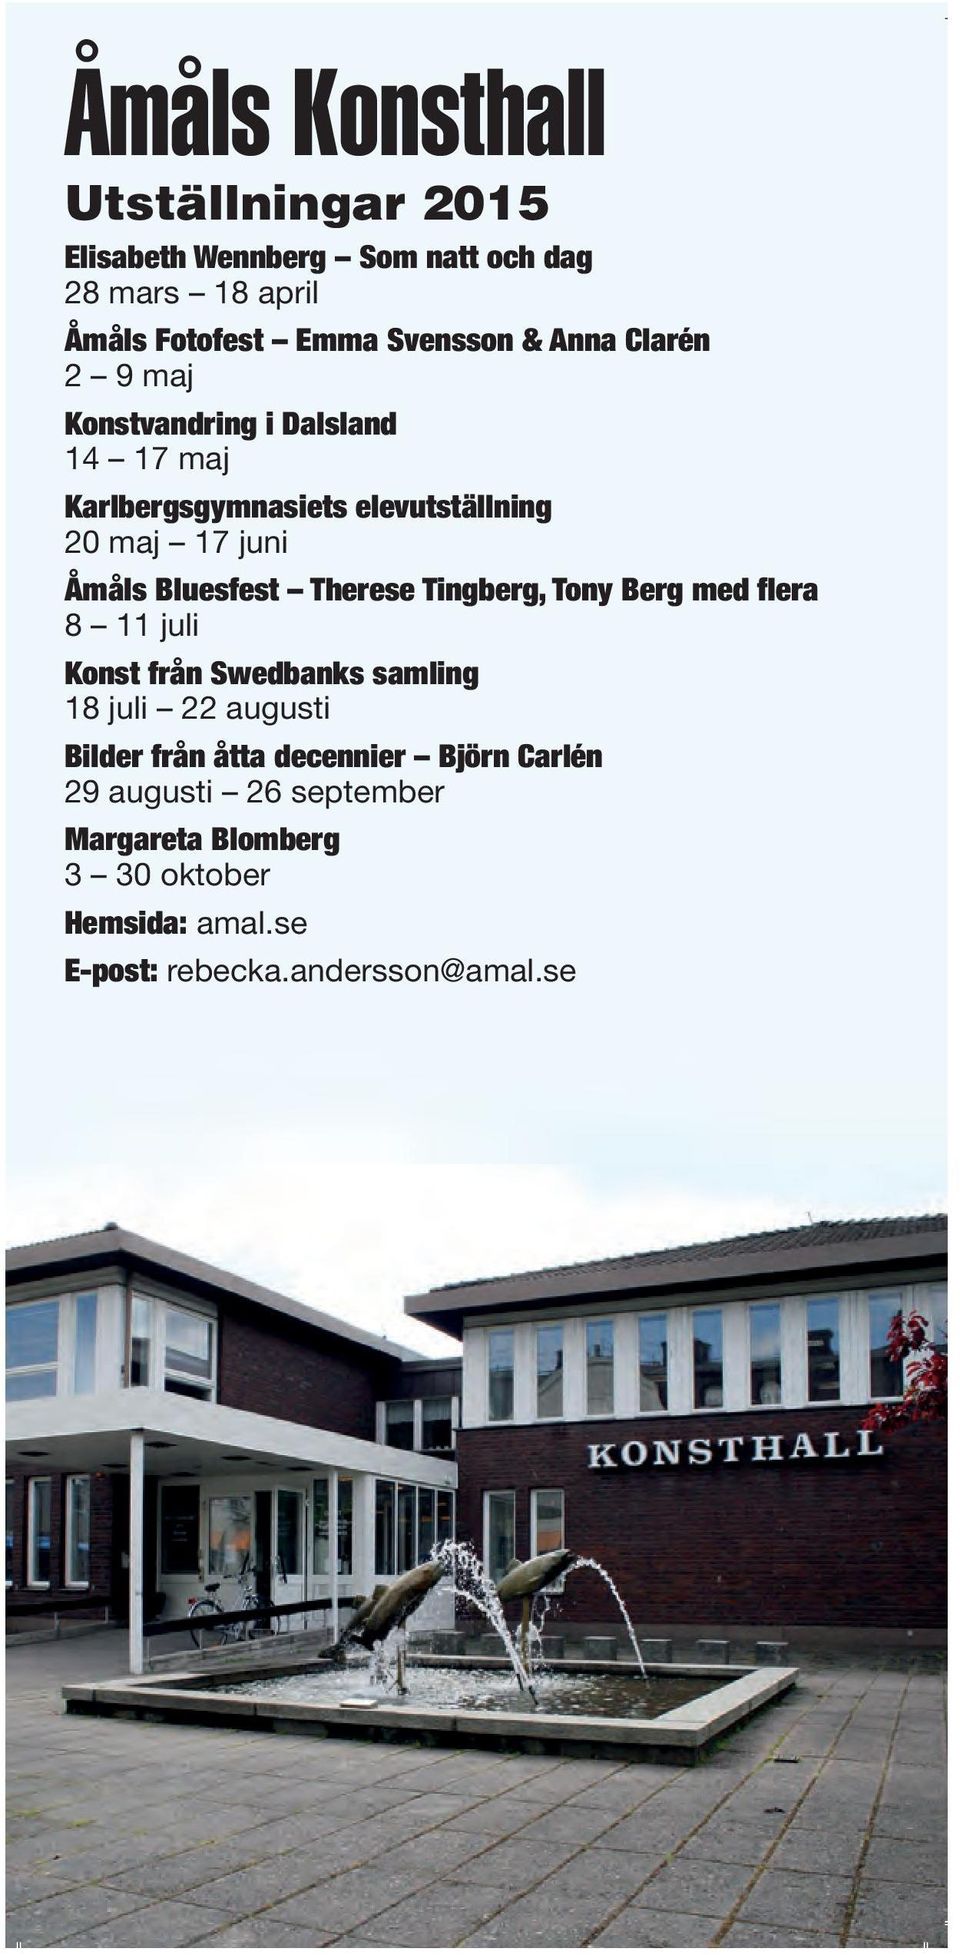 Bluesfest Therese Tingberg, Tony Berg med flera 8 11 juli Konst från Swedbanks samling 18 juli 22 augusti Bilder från